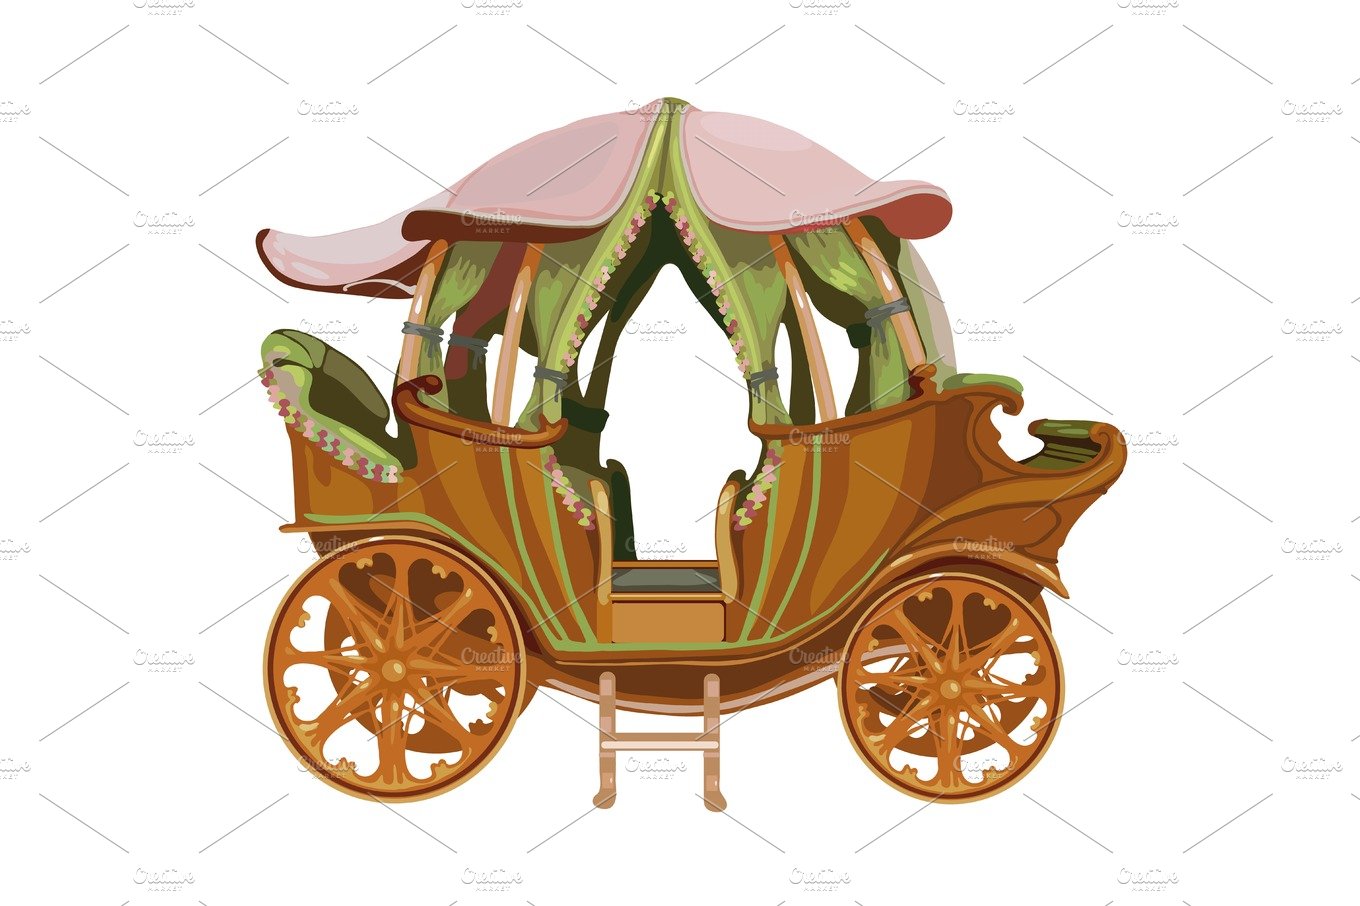 Cartoon carriage of Princess cover image.